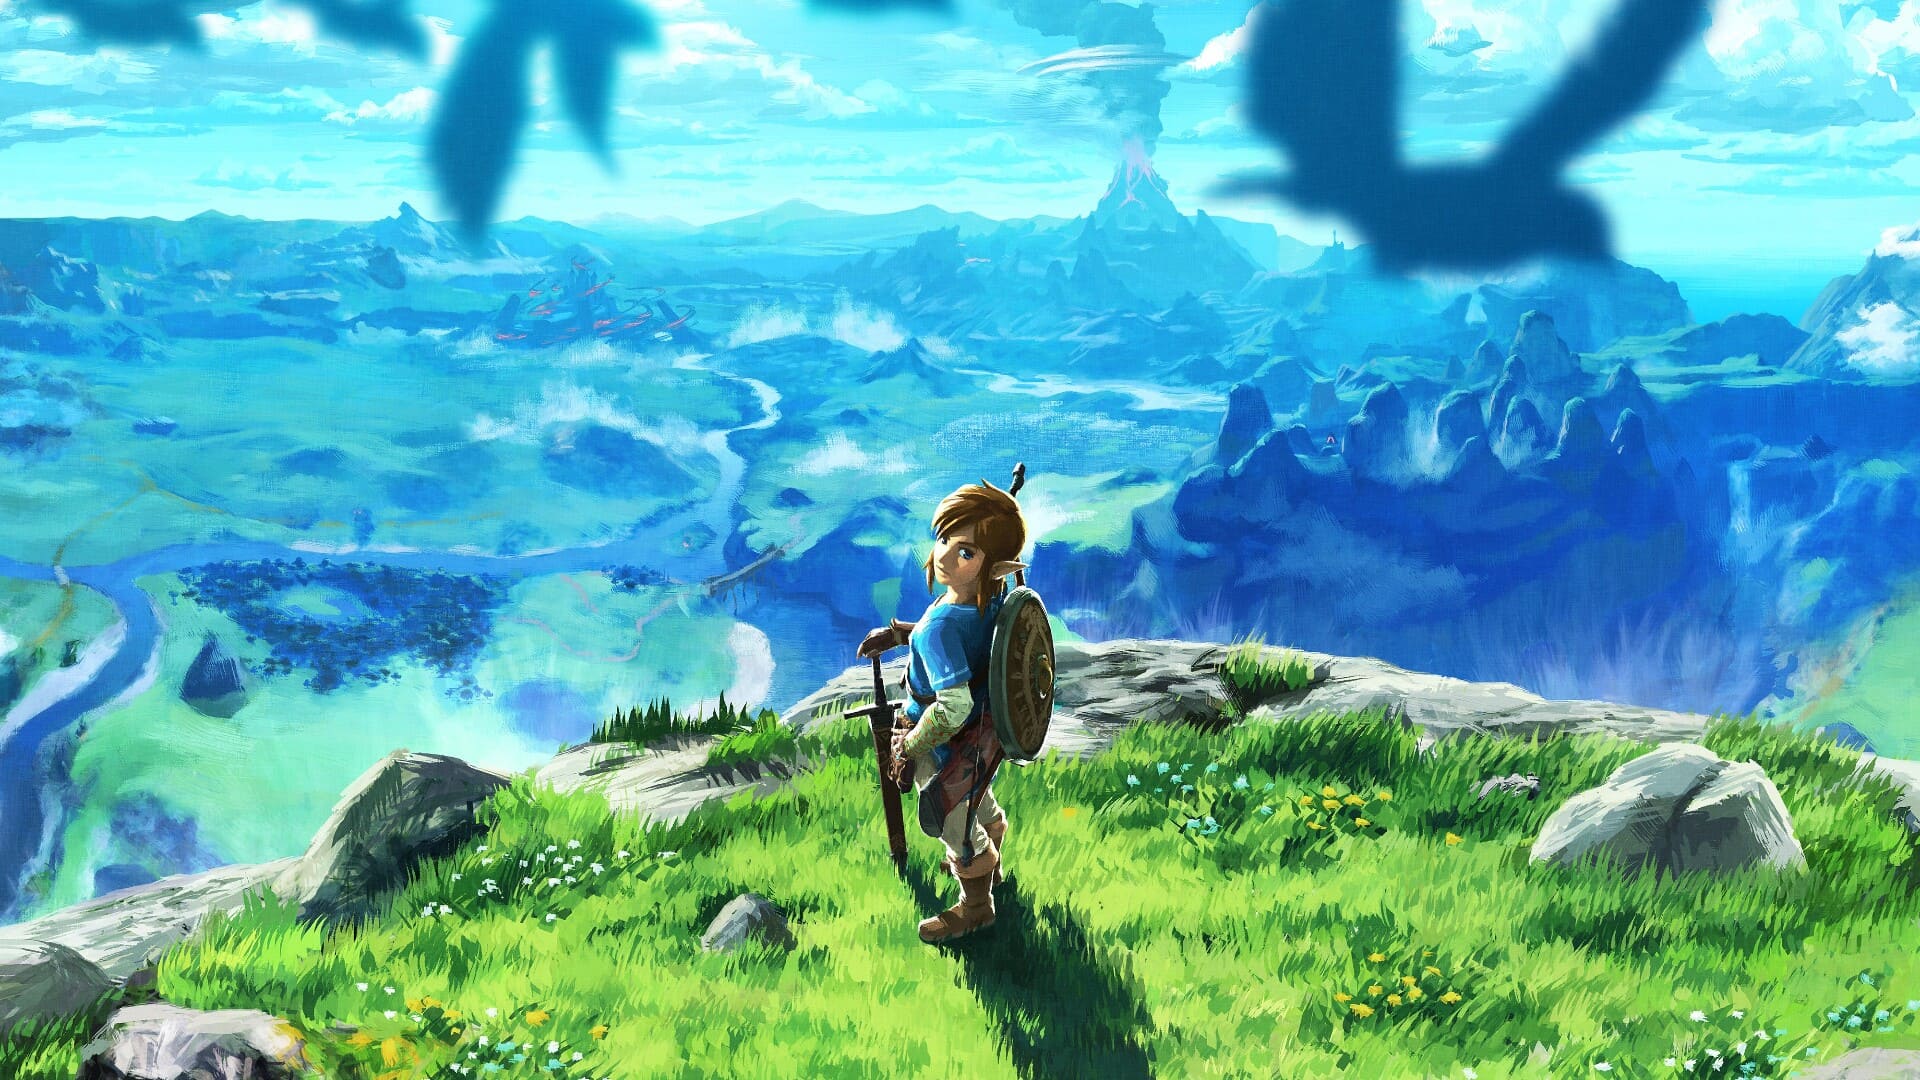 Legend Of Zelda Wallpaper For Desktop